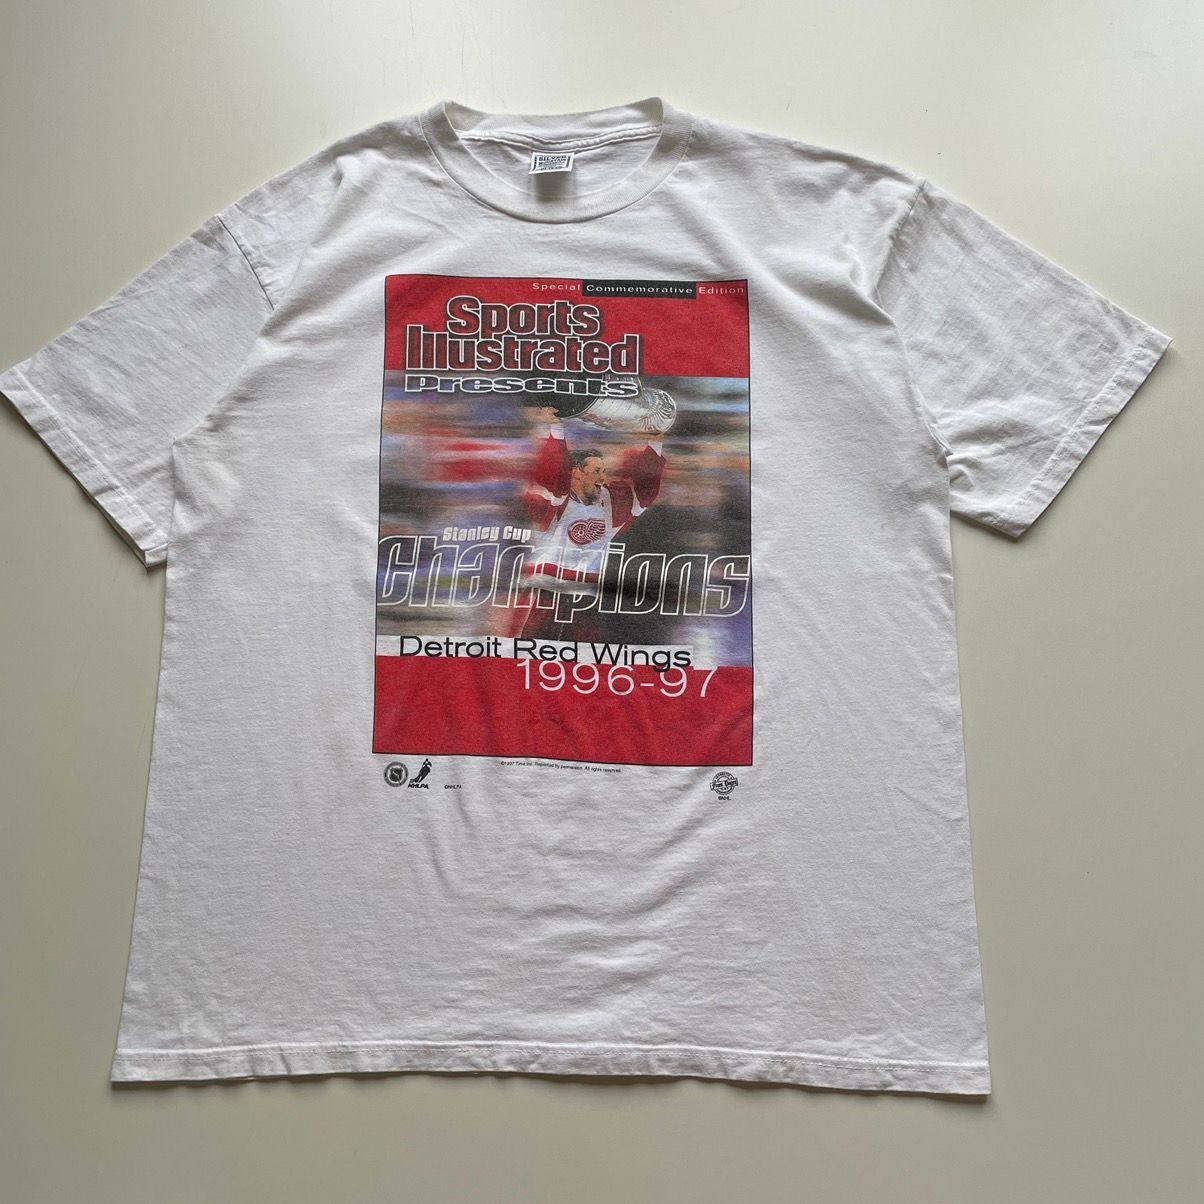 Vintage Vintage 90s Detroit Redwings Stanley Cup Champions T shirt Size US XL / EU 56 / 4 - 1 Preview